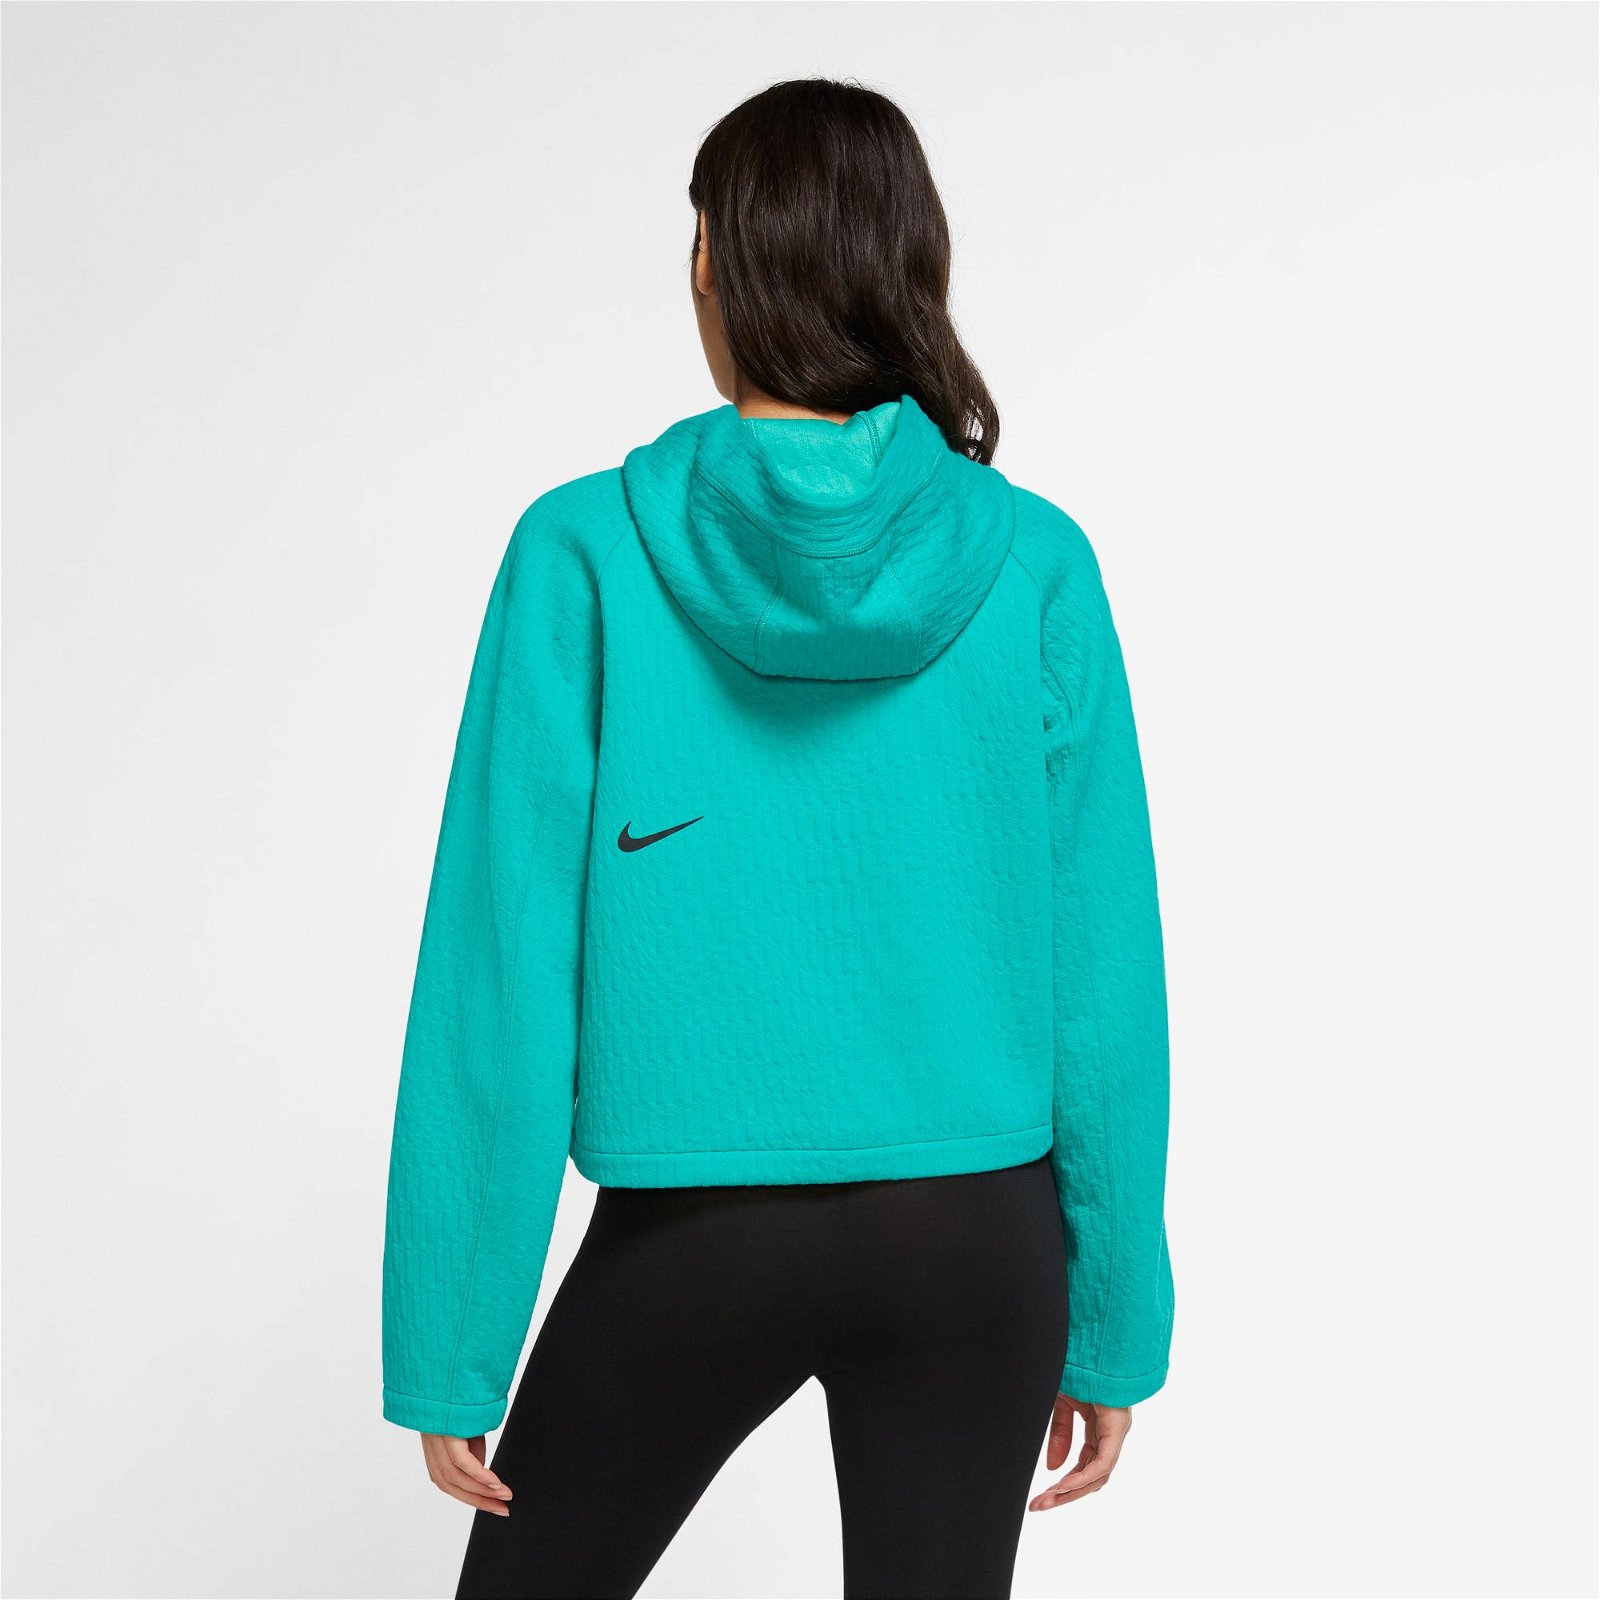 Nike Sportswear Tck Pck Aoj Kadın Yeşil Sweatshirt